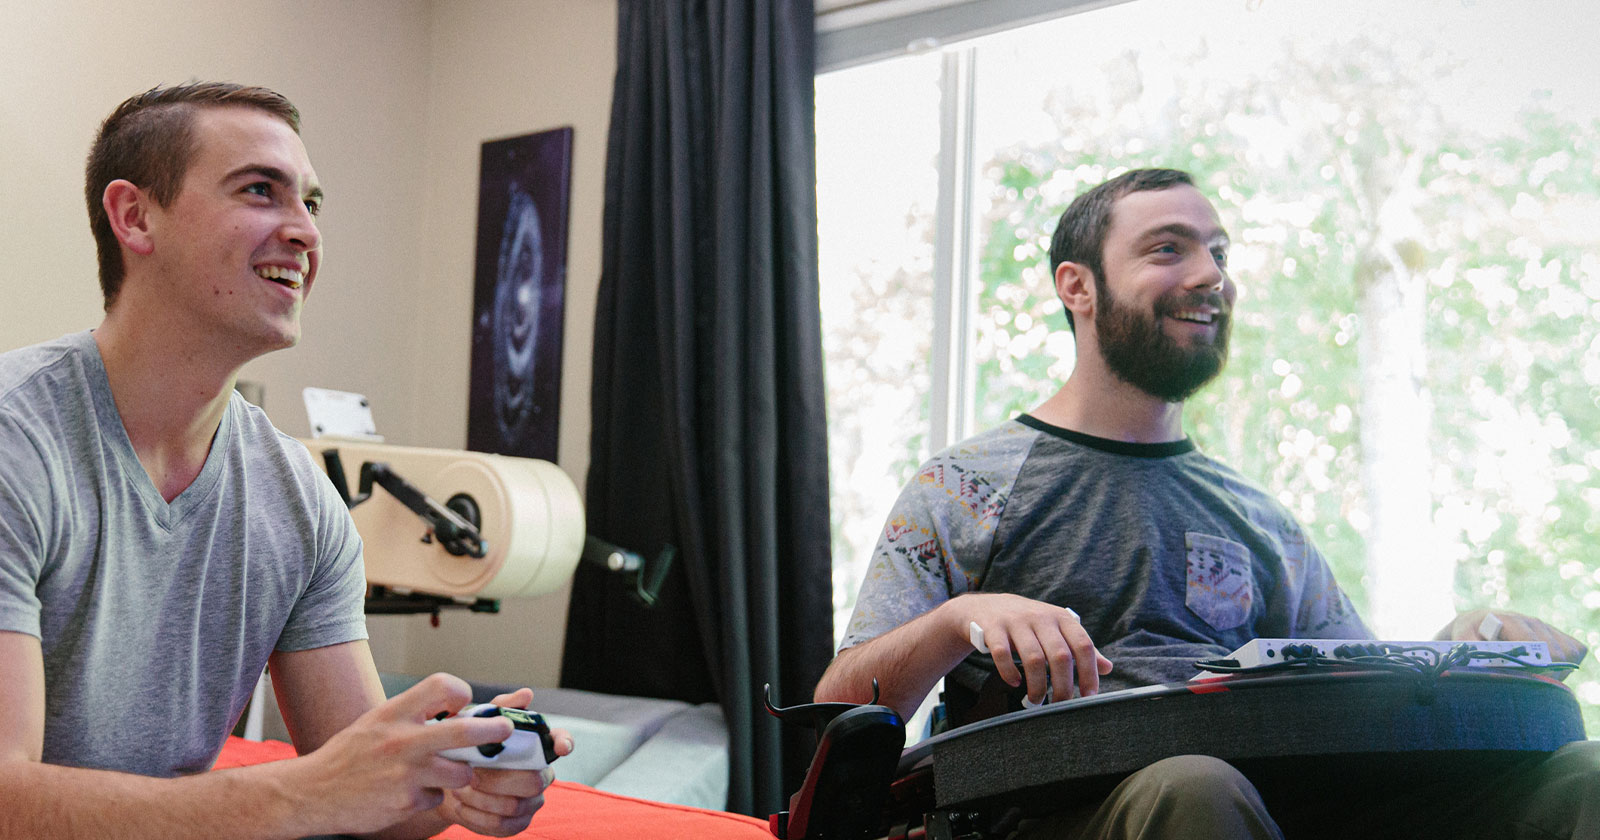 Spencer Allen disfruta de un videojuego con su amigo usando el Xbox Adaptive Controller.